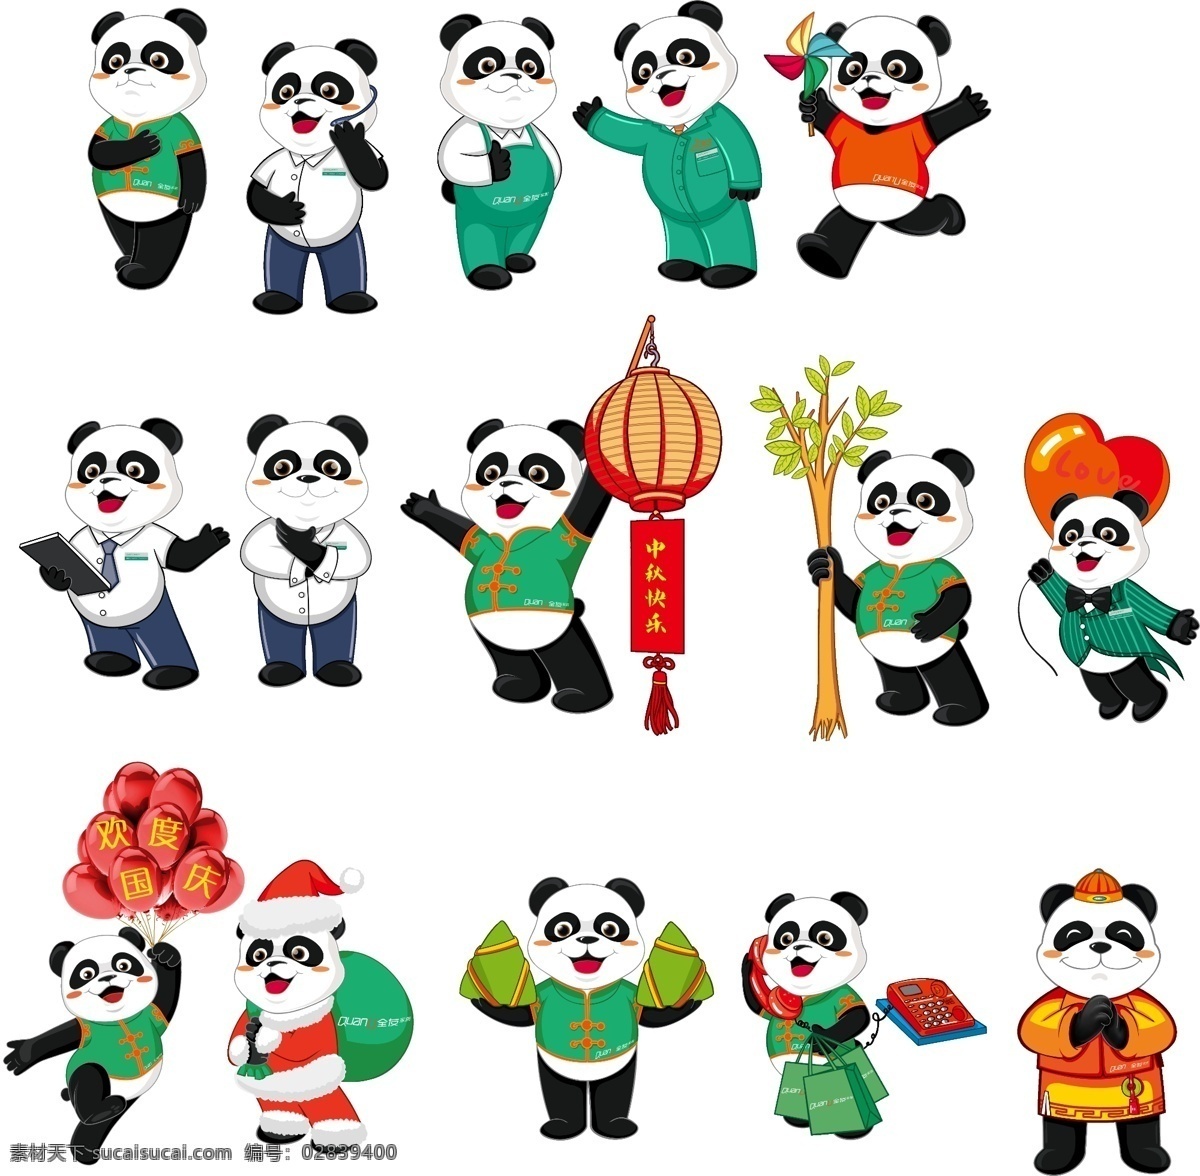 全友家居熊猫 全友家居 熊猫 国宝 动漫熊猫 动物 大熊猫 全友熊猫 分层